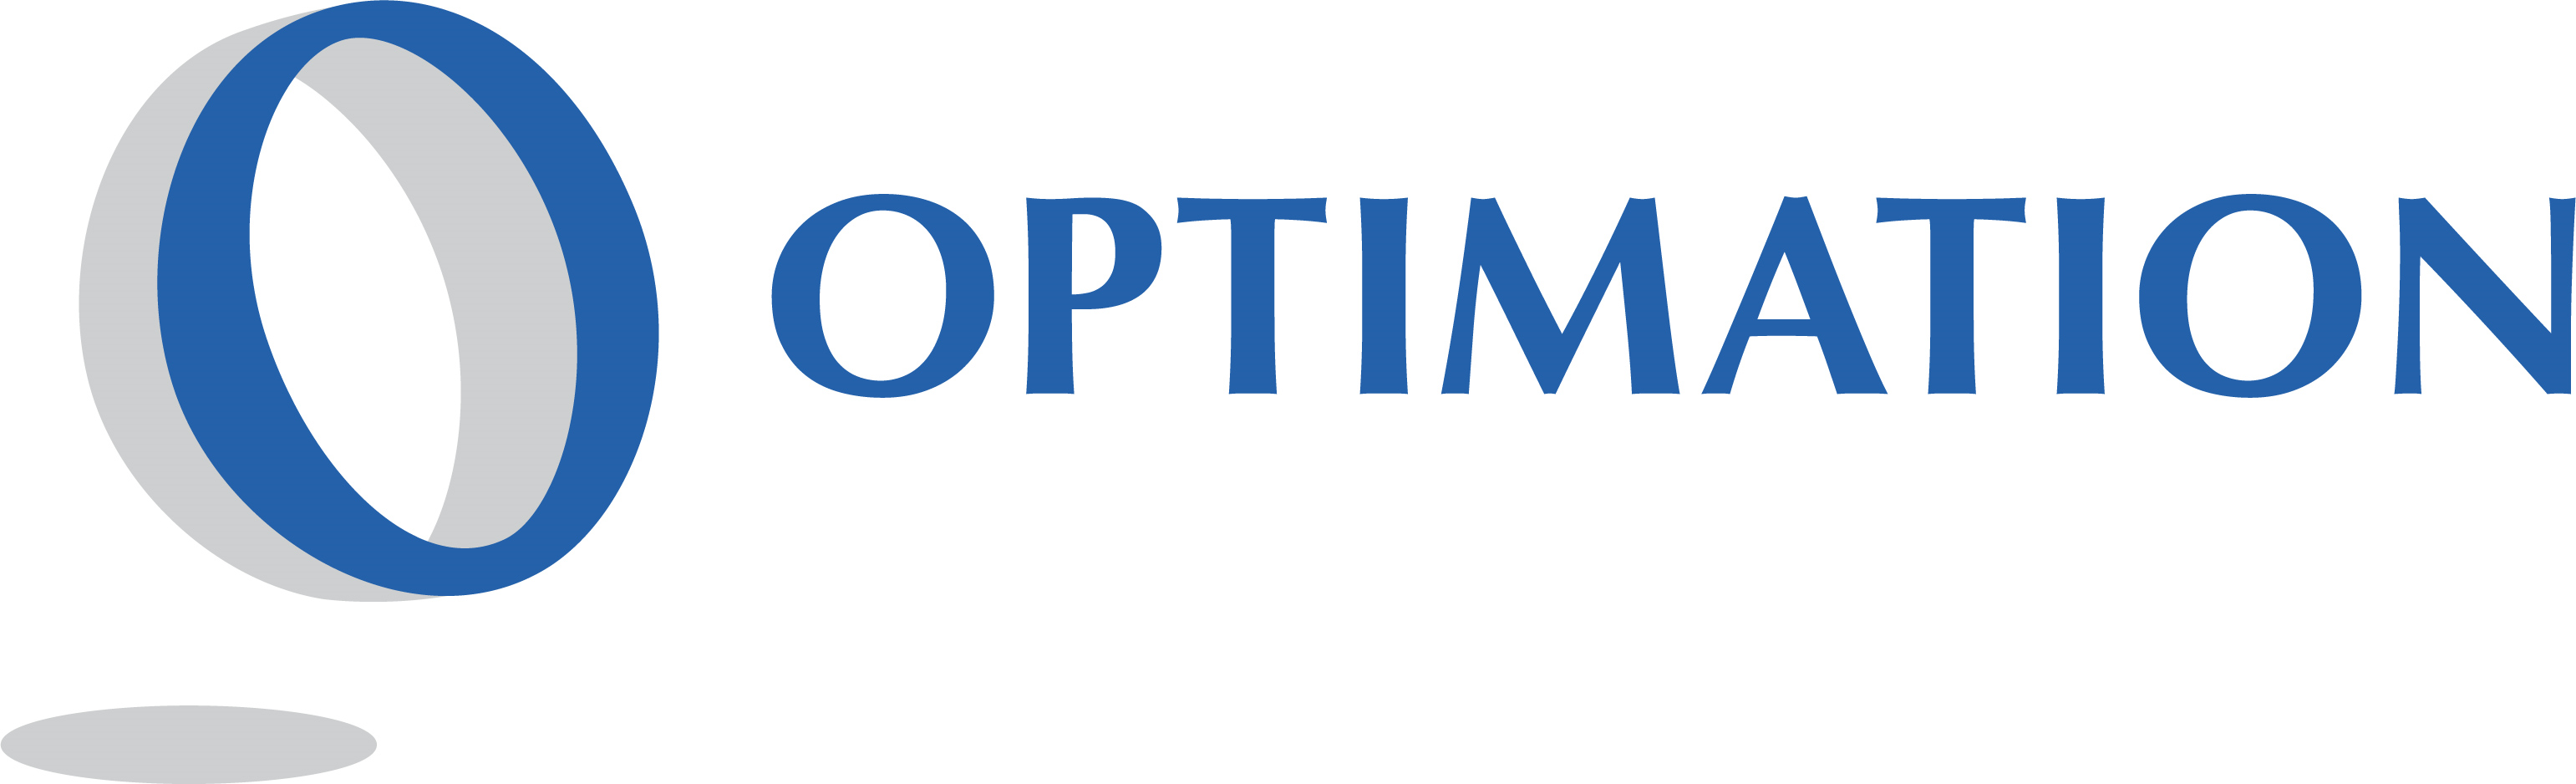 Optimation logo